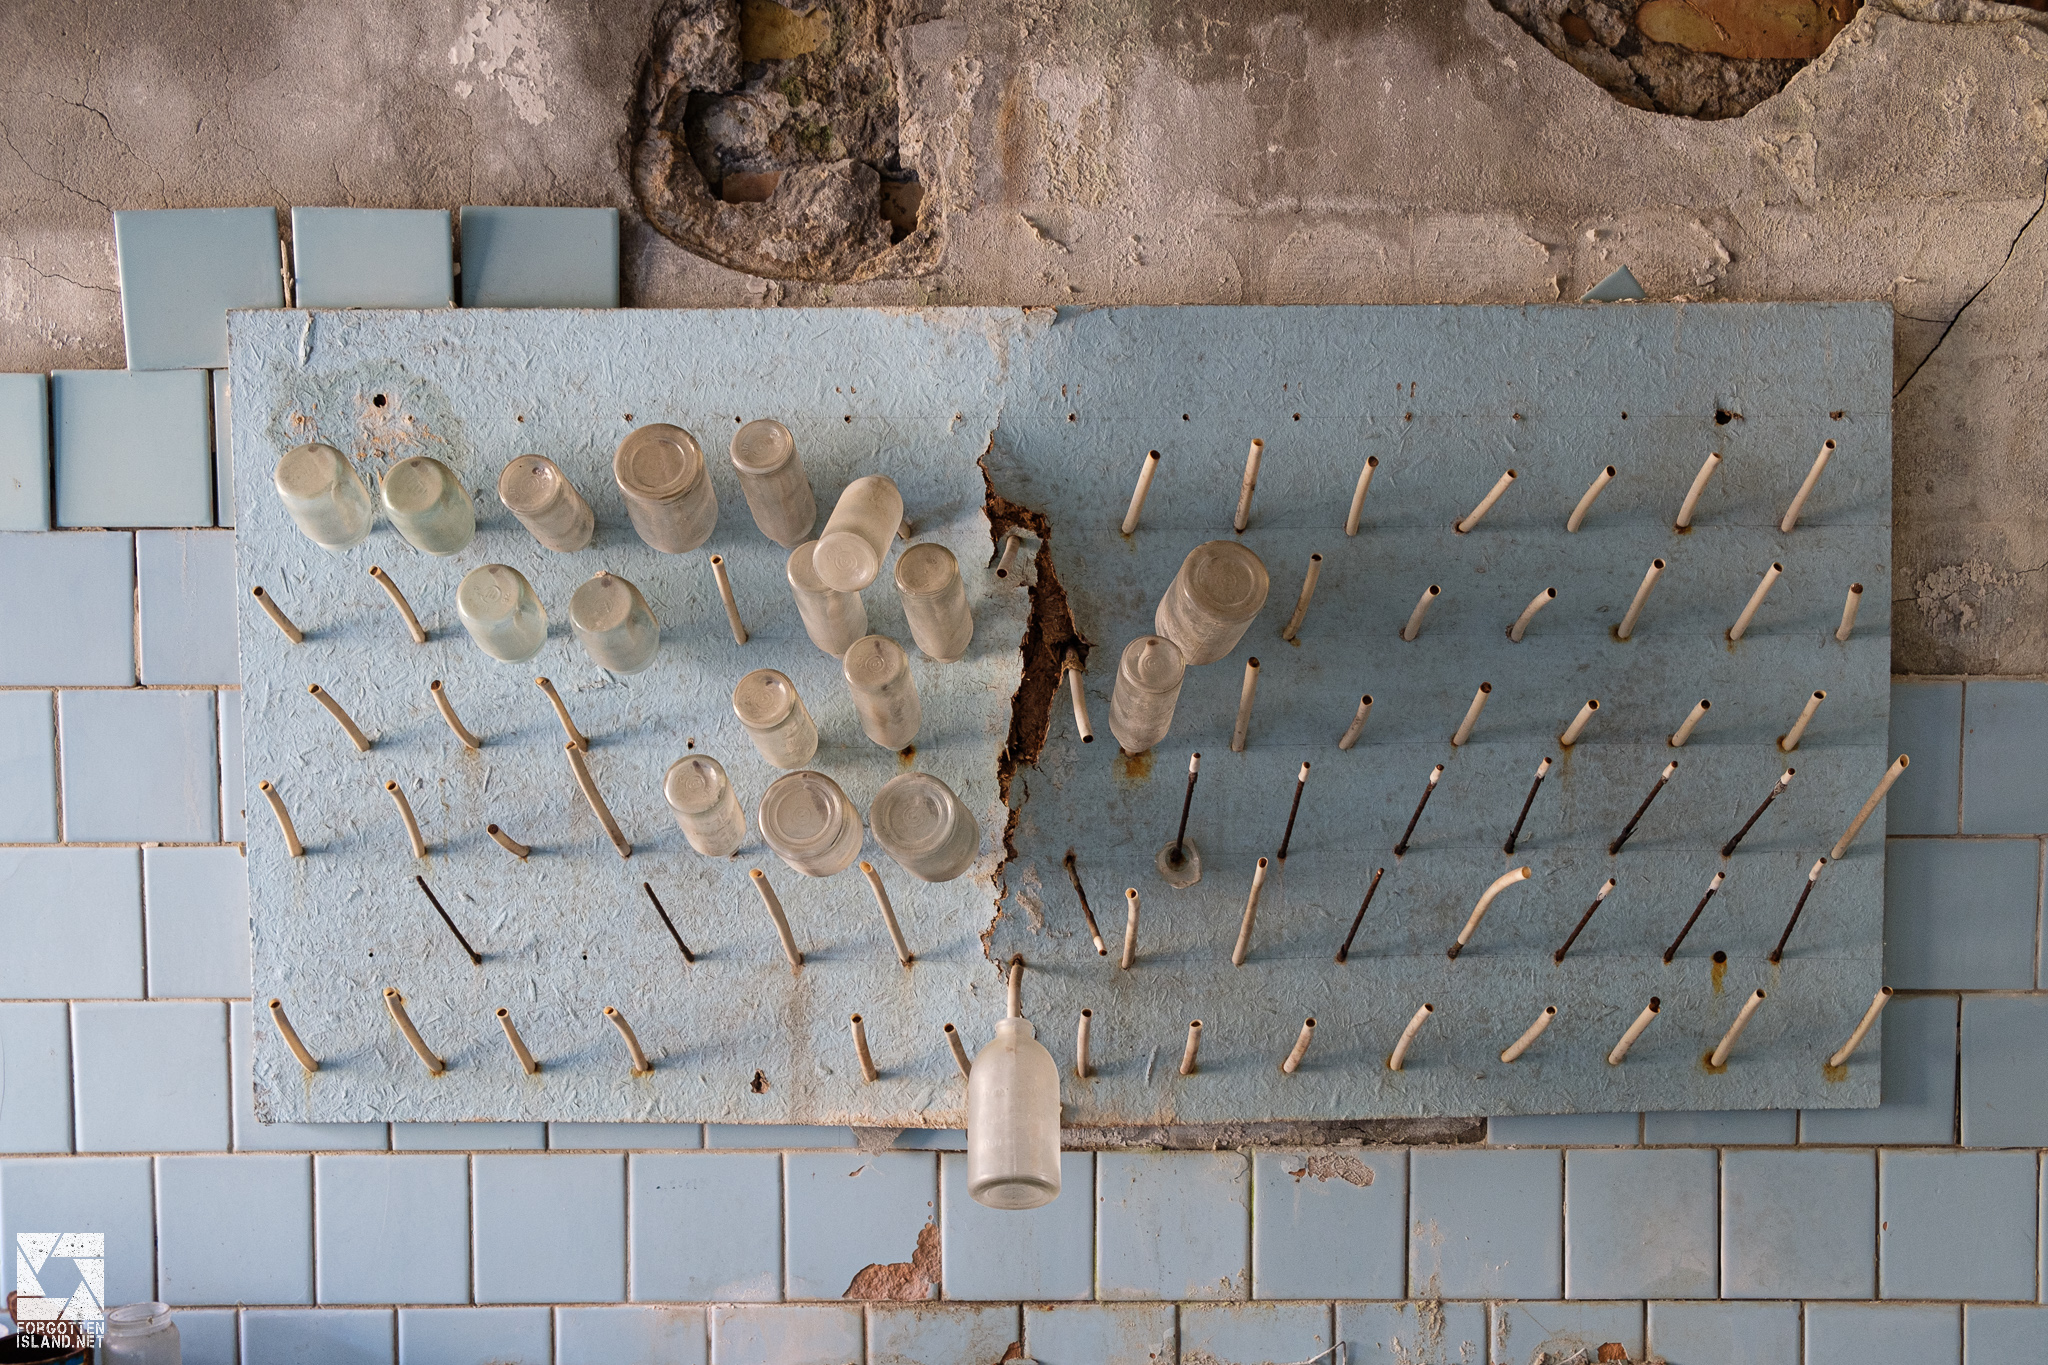 Sanitary and Epidemic Station in Pripyat